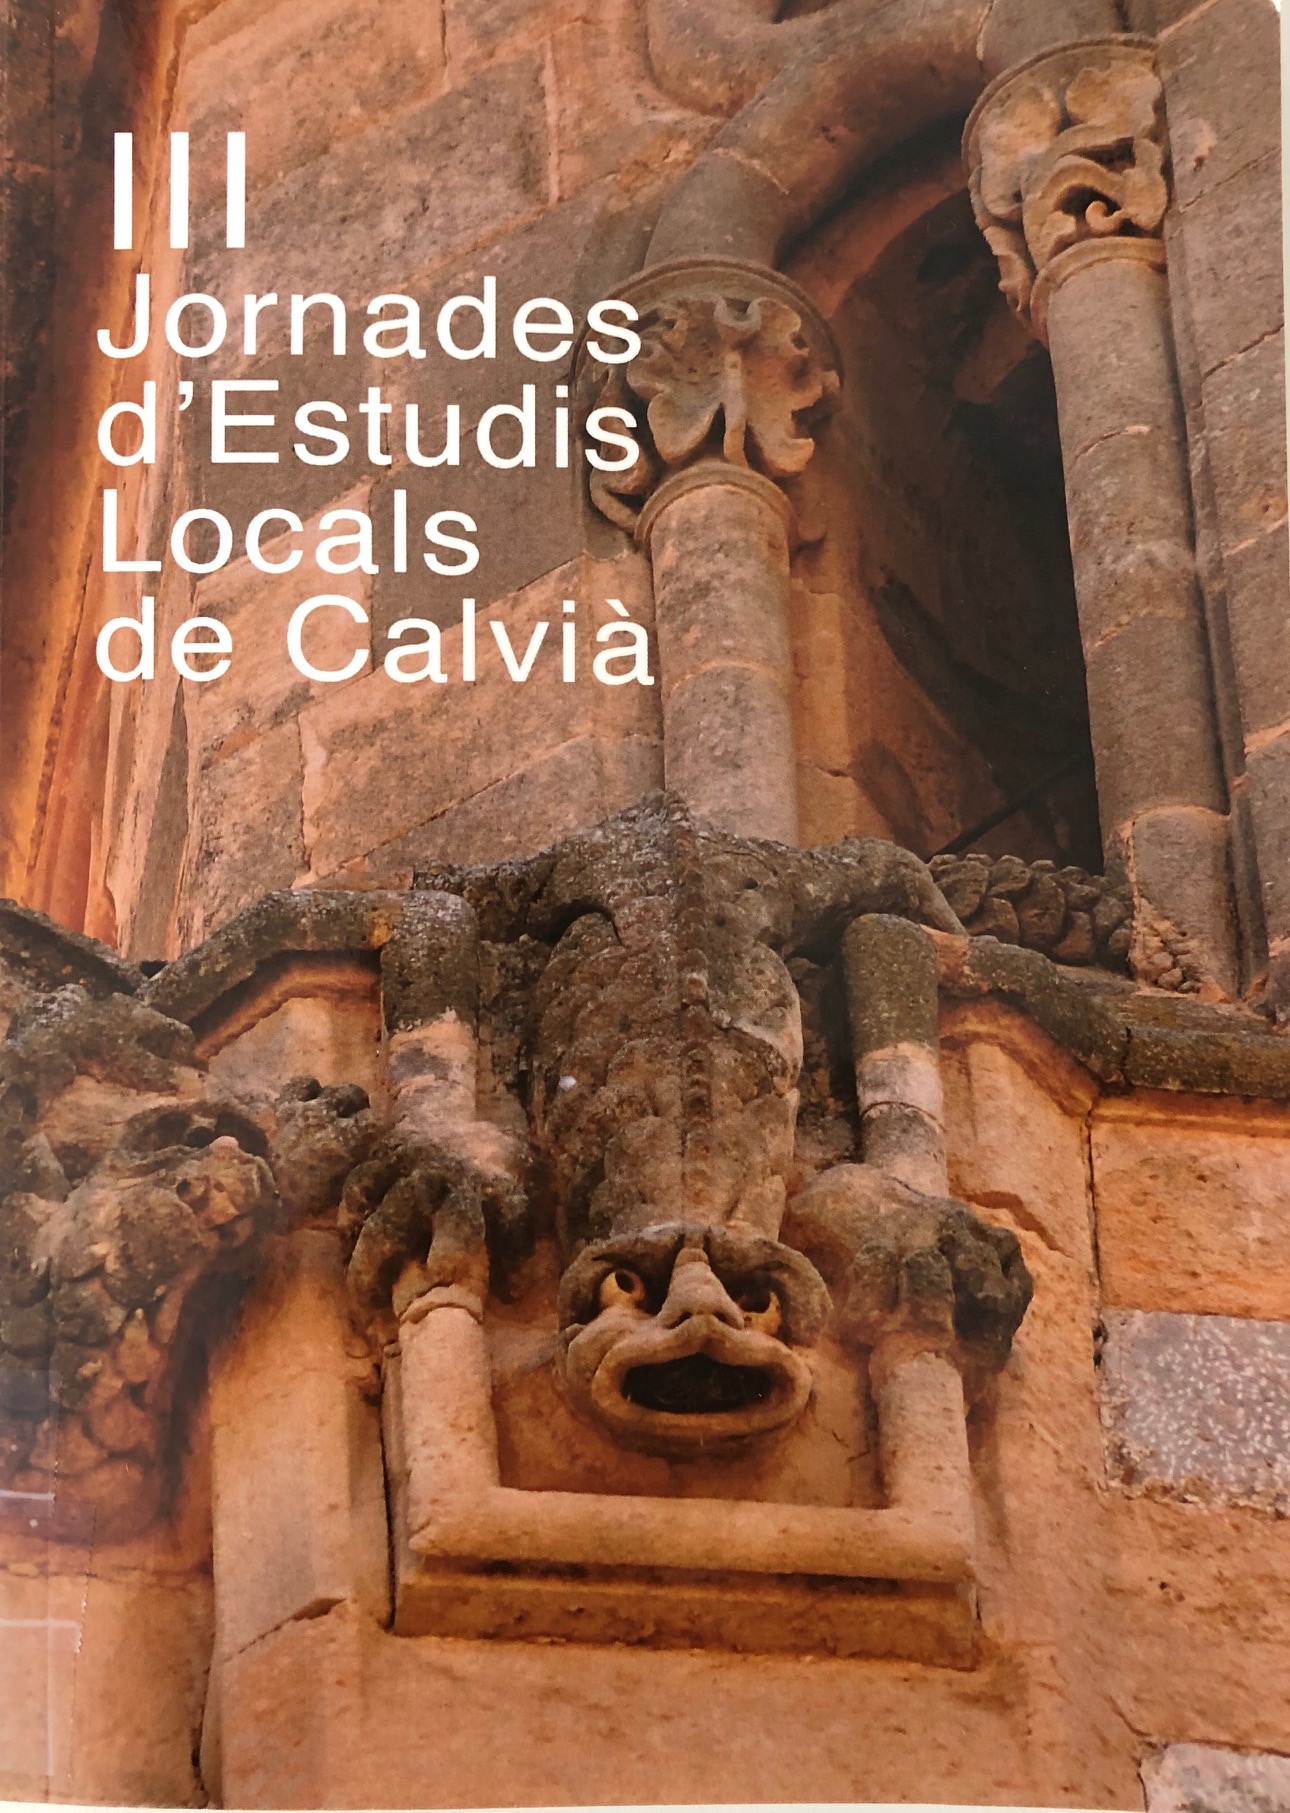 Imagen de portada del libro III Jornades d'Estudis Locals de Calvià